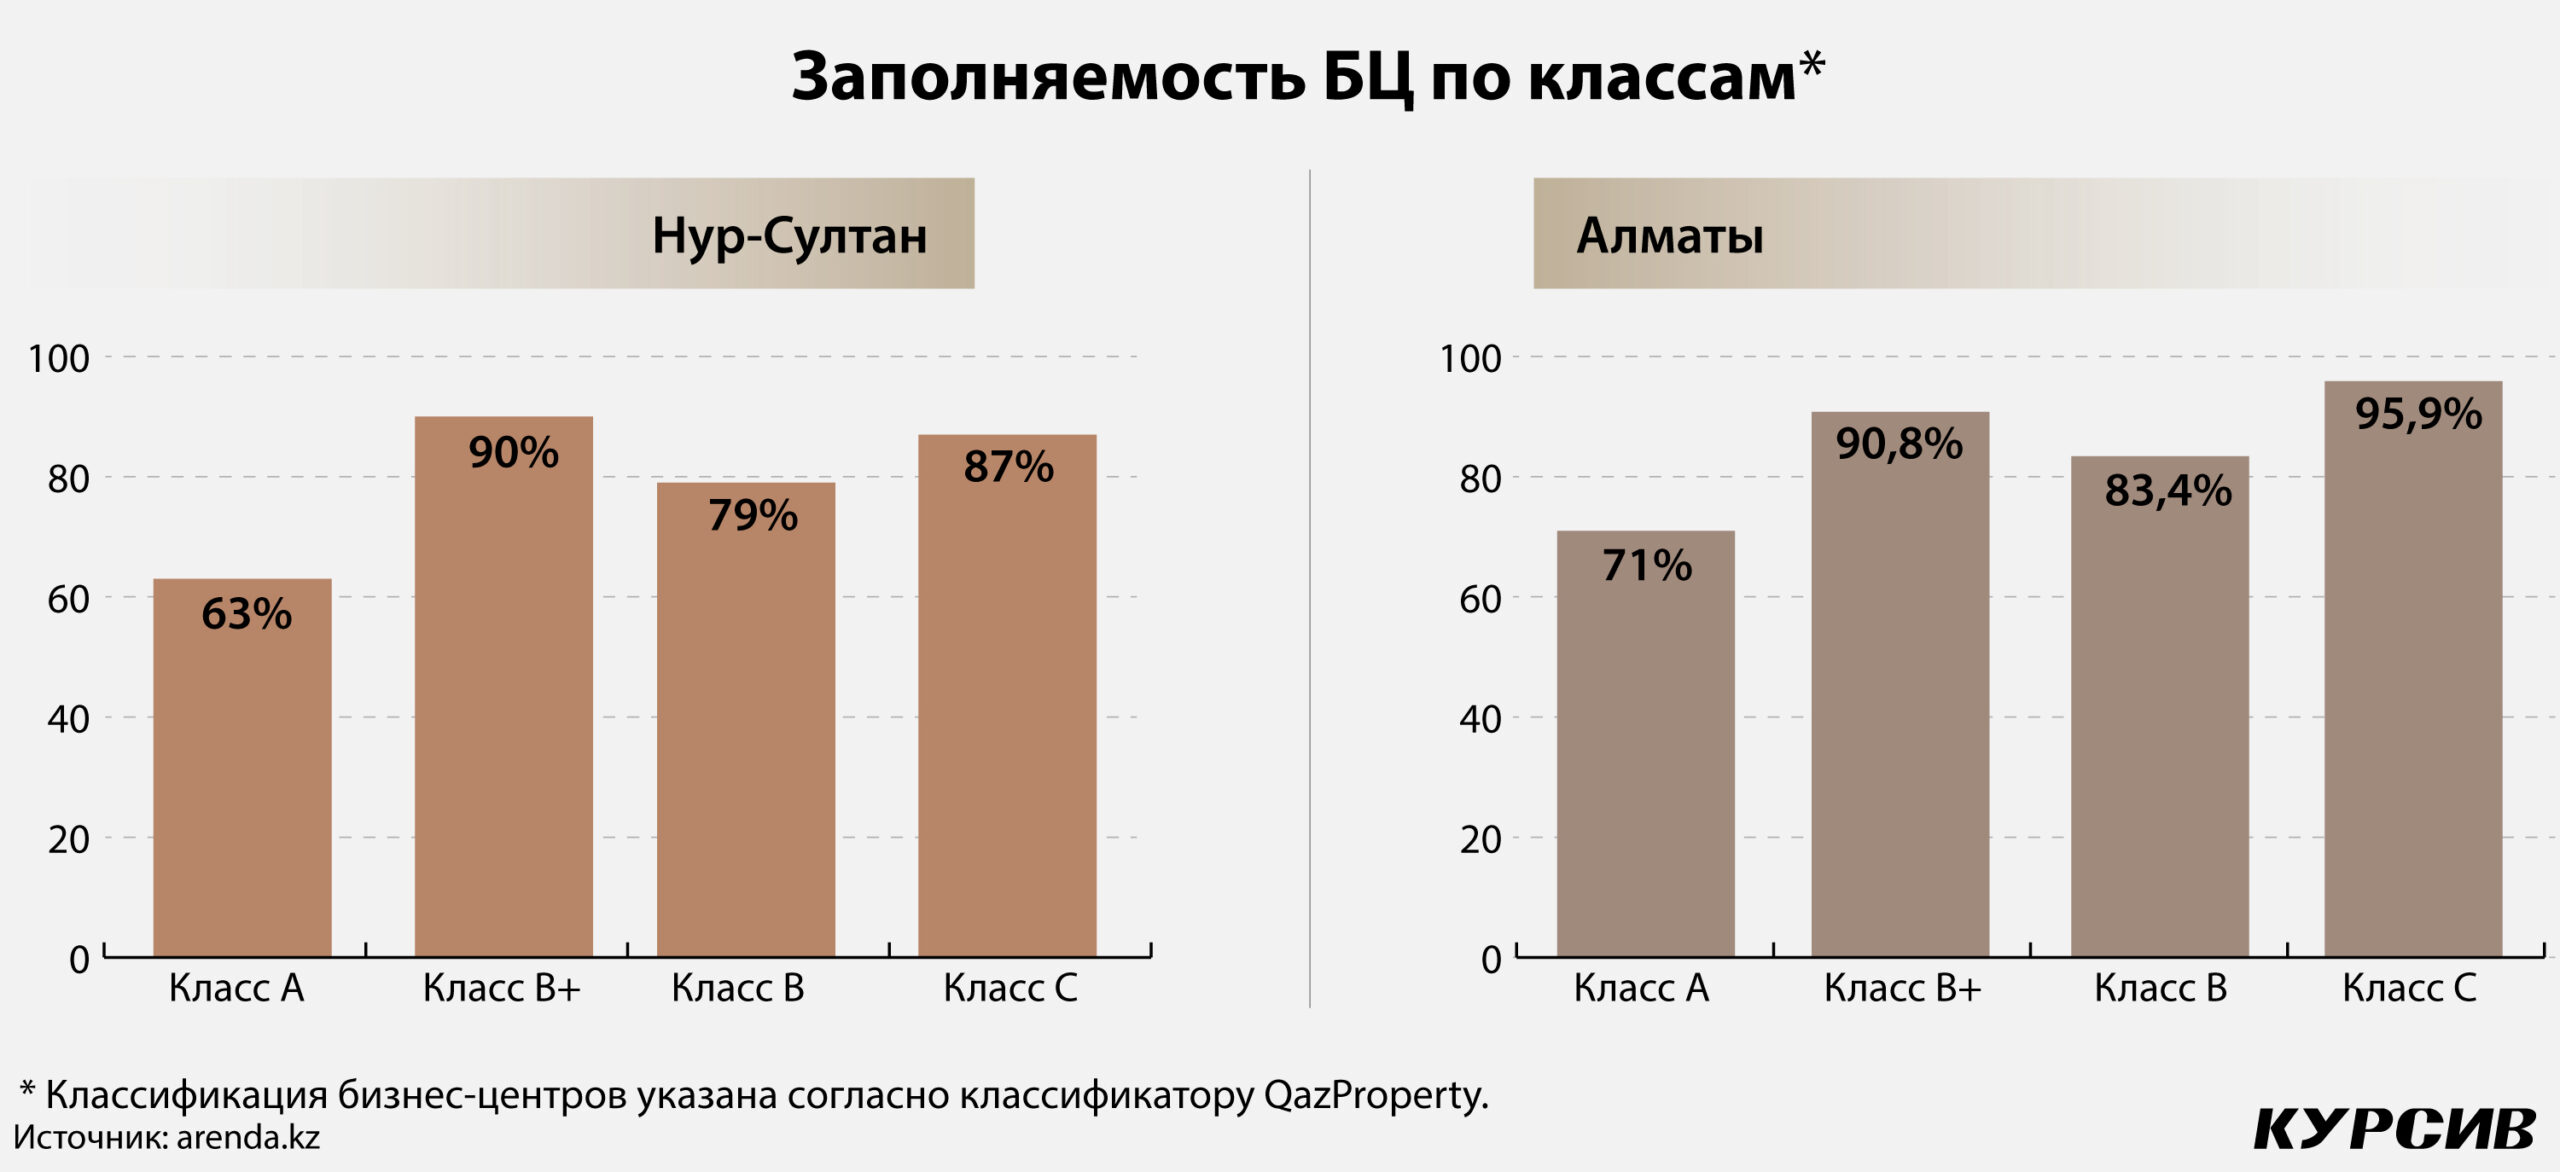 Самая продаваемая мебель в россии статистика